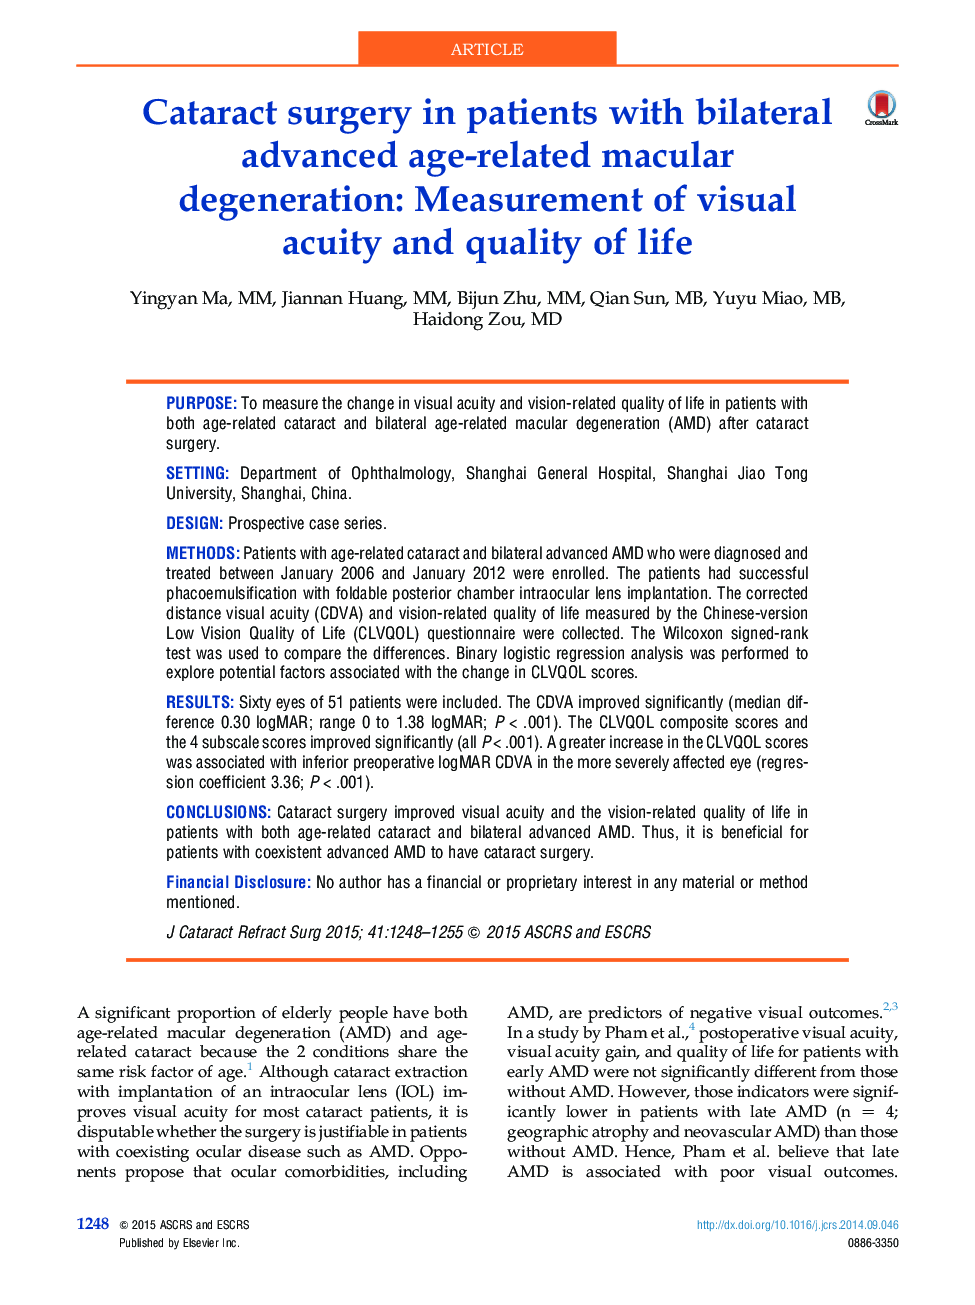 جراحی آب مروارید در مبتلایان به دژنراسیون ماکولا مربوط به سن بلوغ دو طرفه: اندازه گیری حدت بینایی و کیفیت زندگی 